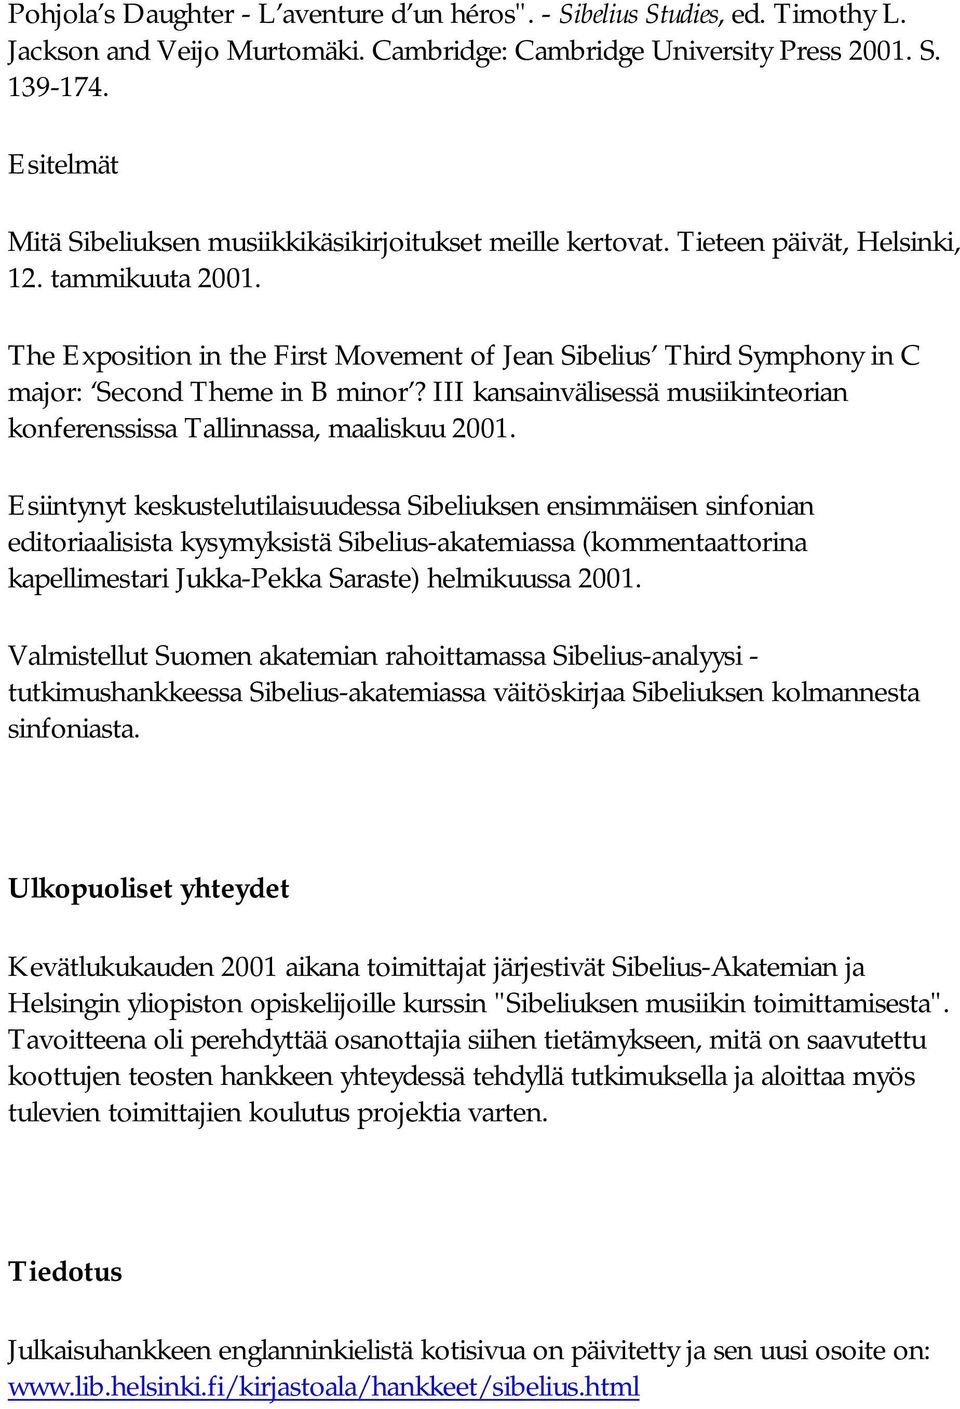 The Exposition in the First Movement of Jean Sibelius Third Symphony in C major: Second Theme in B minor? III kansainvälisessä musiikinteorian konferenssissa Tallinnassa, maaliskuu 2001.